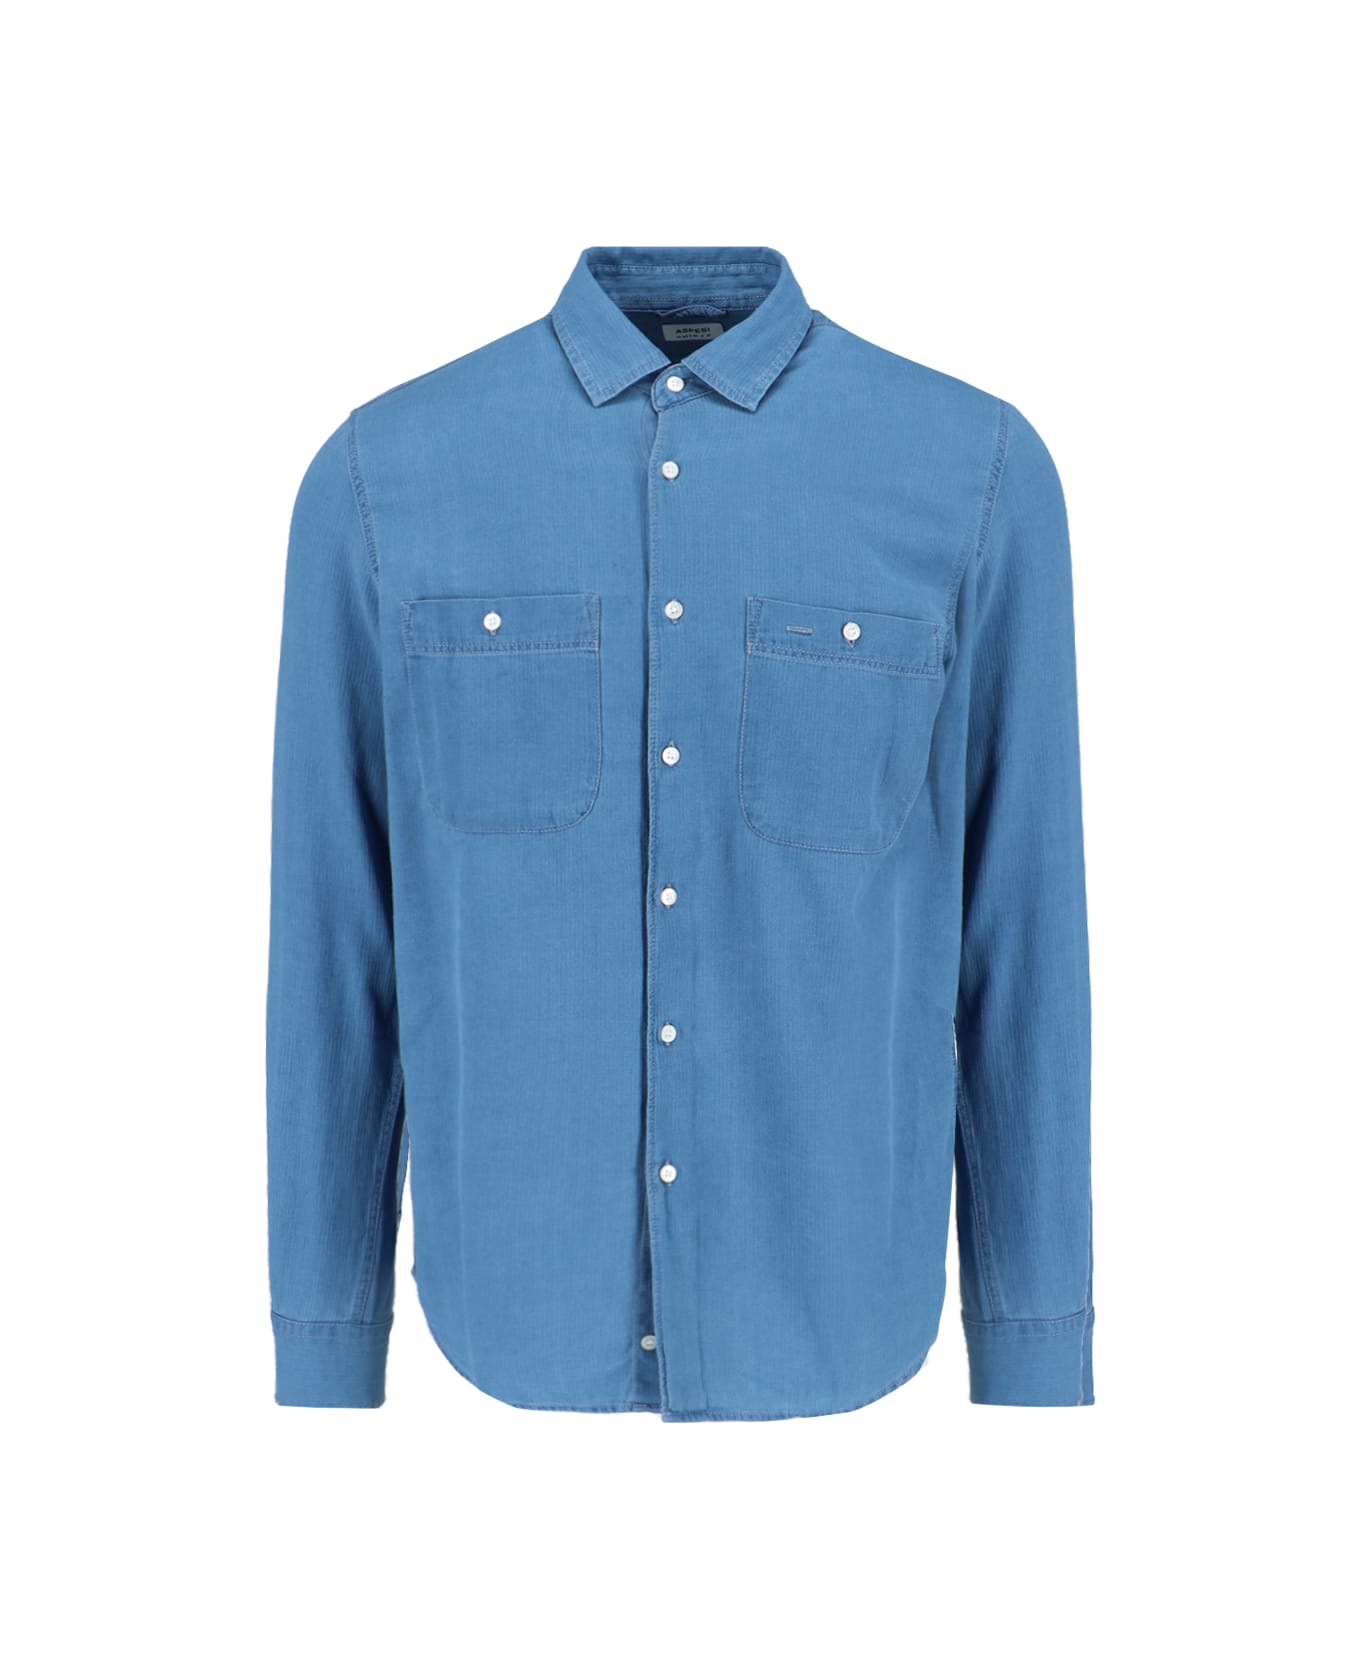 Aspesi 'model C' Shirt - Light Blue